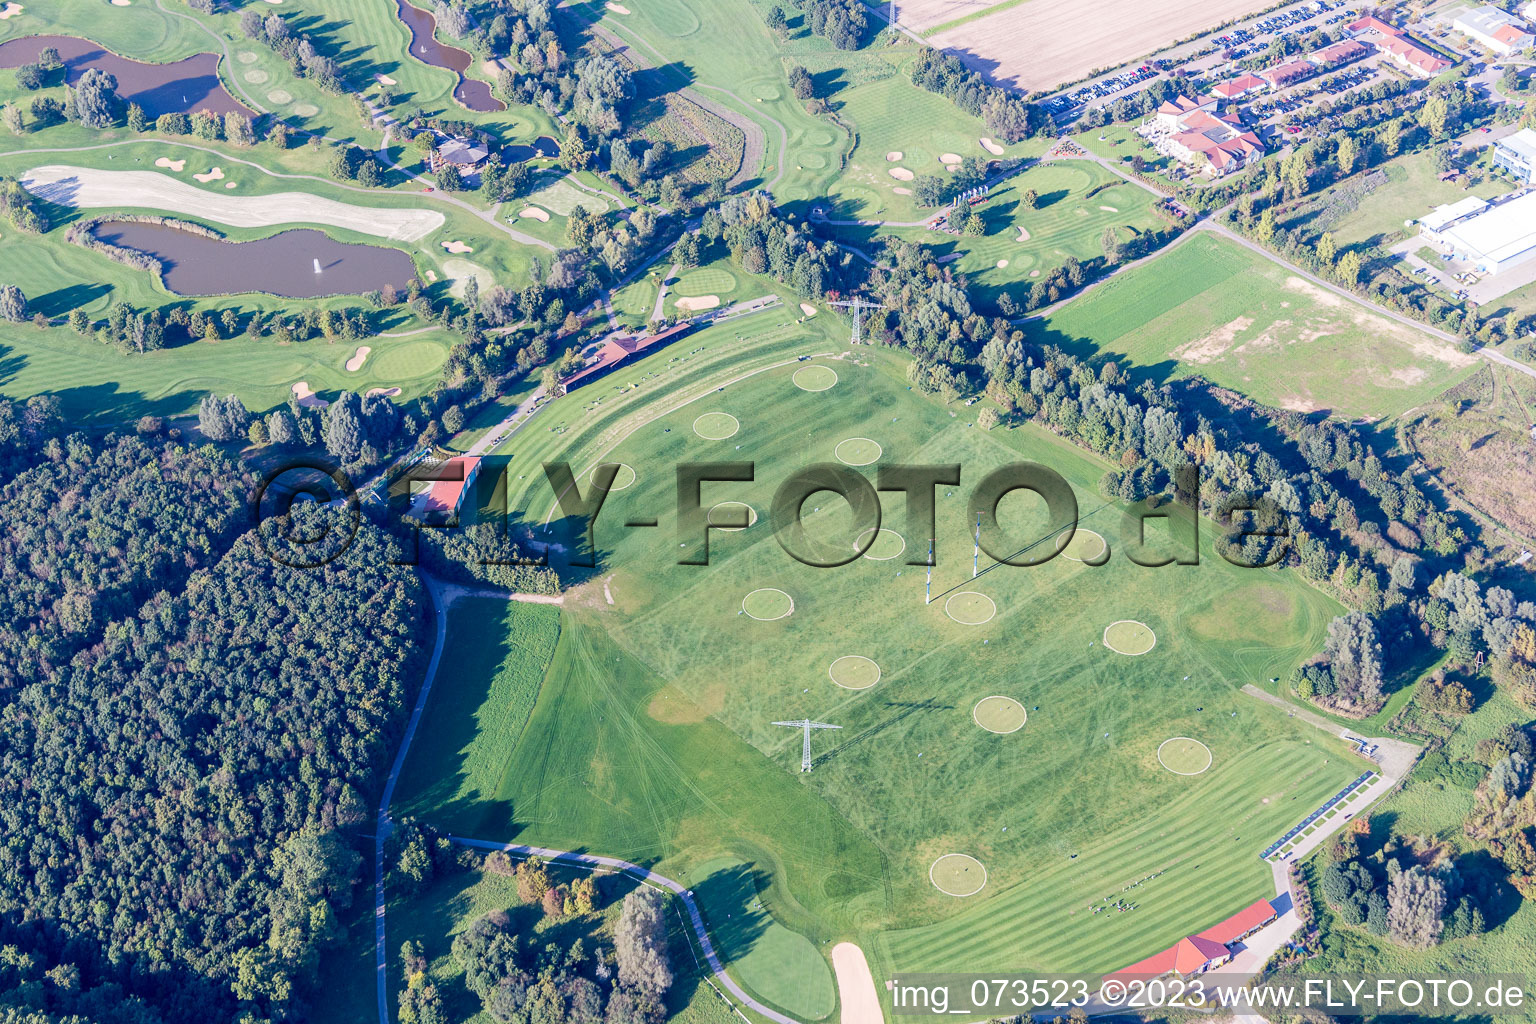 Club de Golf St. Leon-Rot à Saint Léon-Rot à le quartier Rot in St. Leon-Rot dans le département Bade-Wurtemberg, Allemagne depuis l'avion